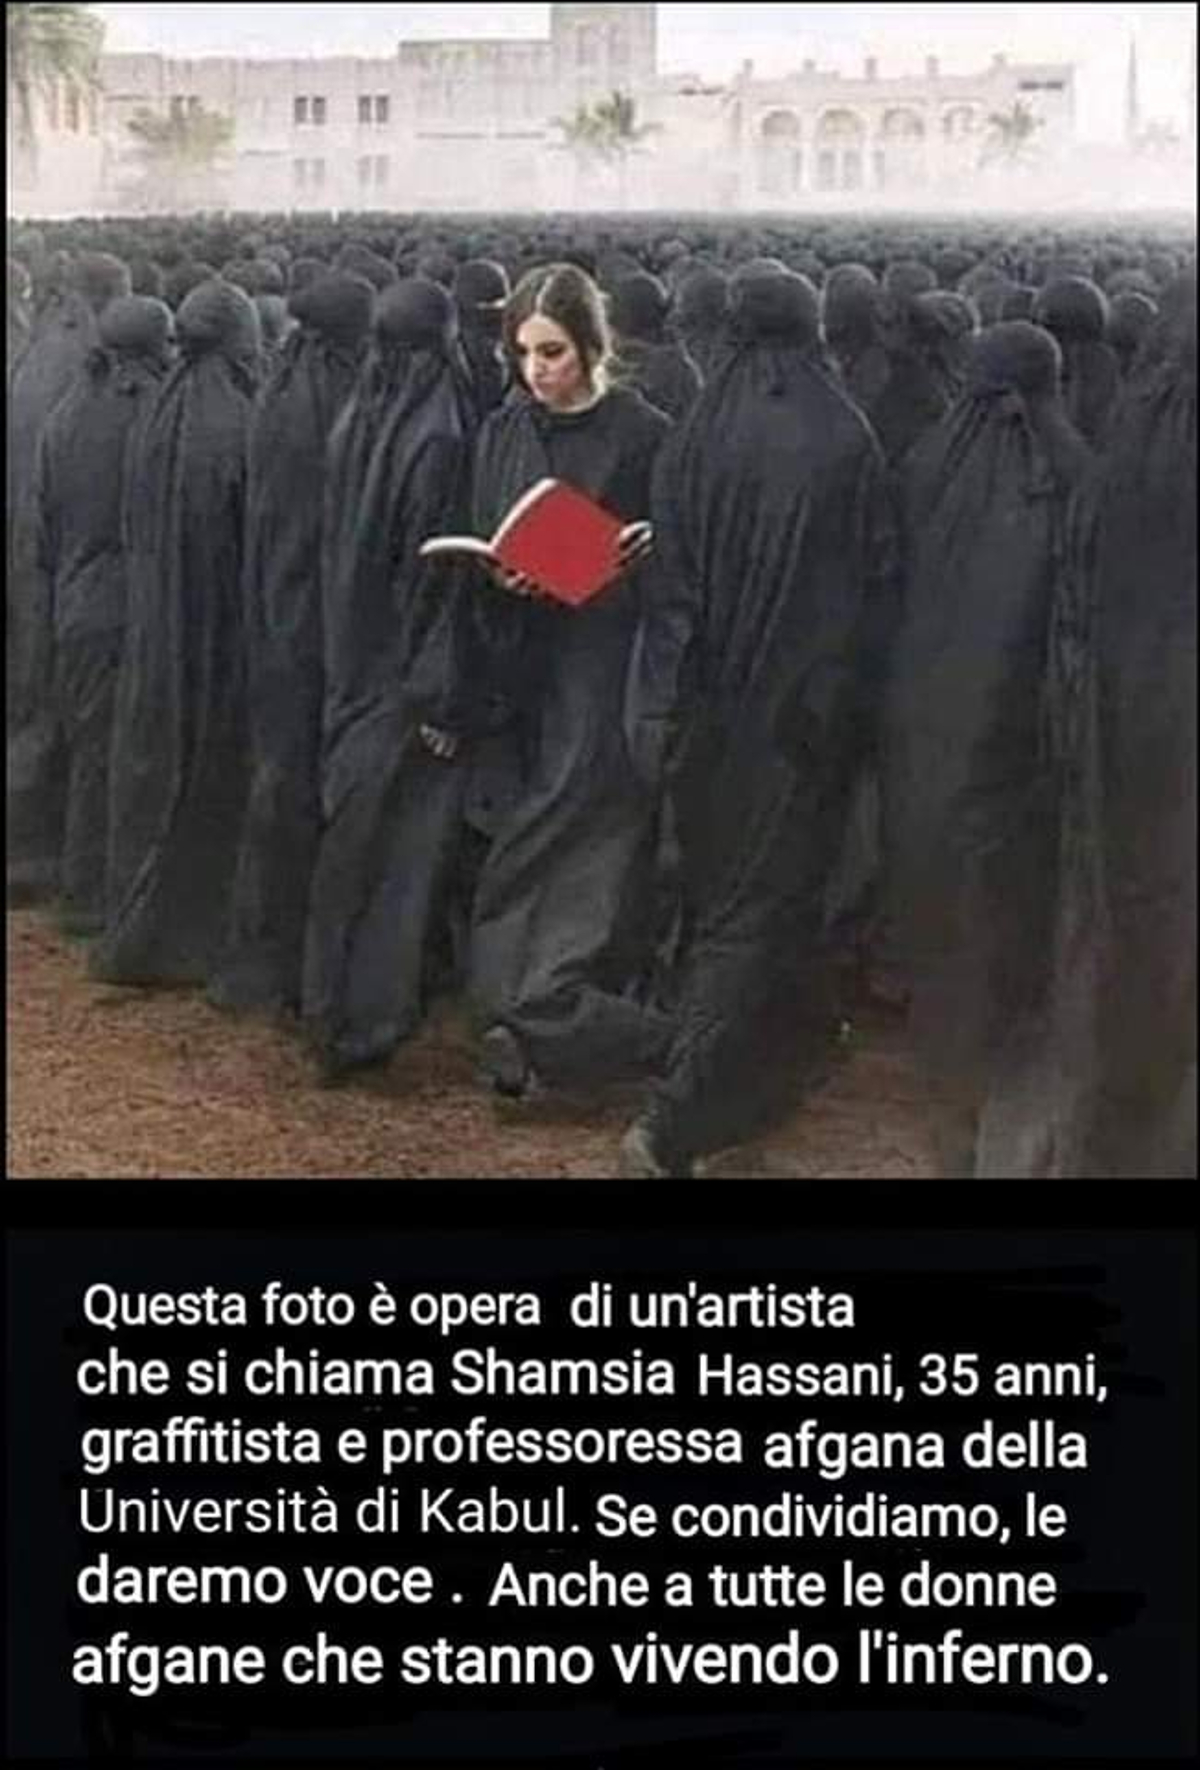 Shamsa Hassani